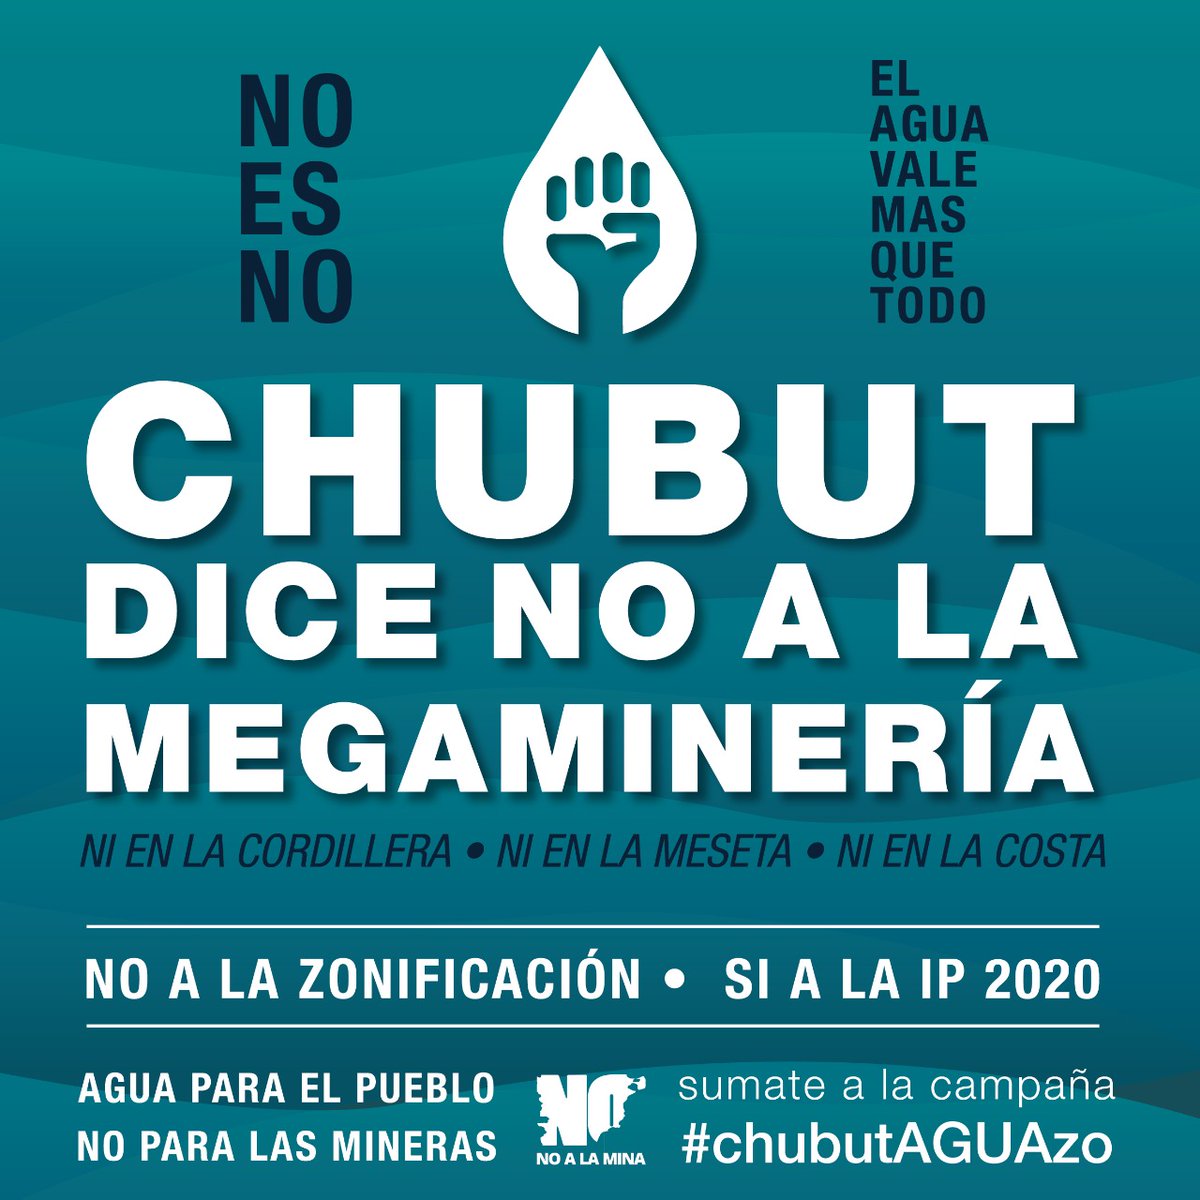 Agua para el pueblo, no para la megaminería. 

#chubutaguazo 
#la7722nosetoca 
#valelapenaluchar